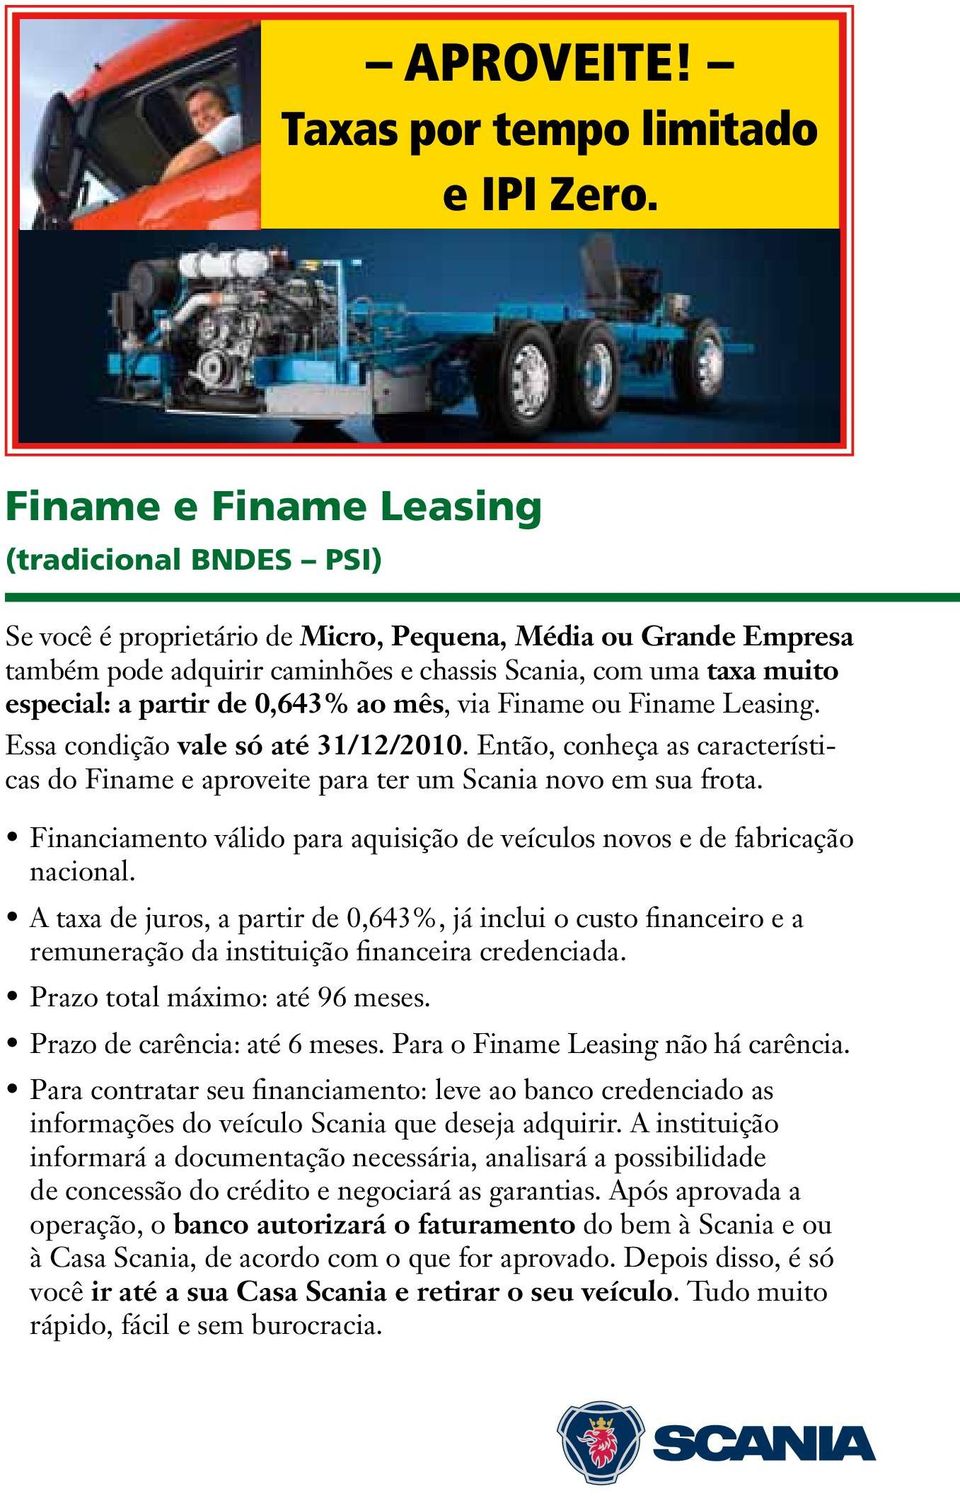 partir de 0,643% ao mês, via Finame ou Finame Leasing. Essa condição vale só até 31/12/2010. Então, conheça as características do Finame e aproveite para ter um Scania novo em sua frota.